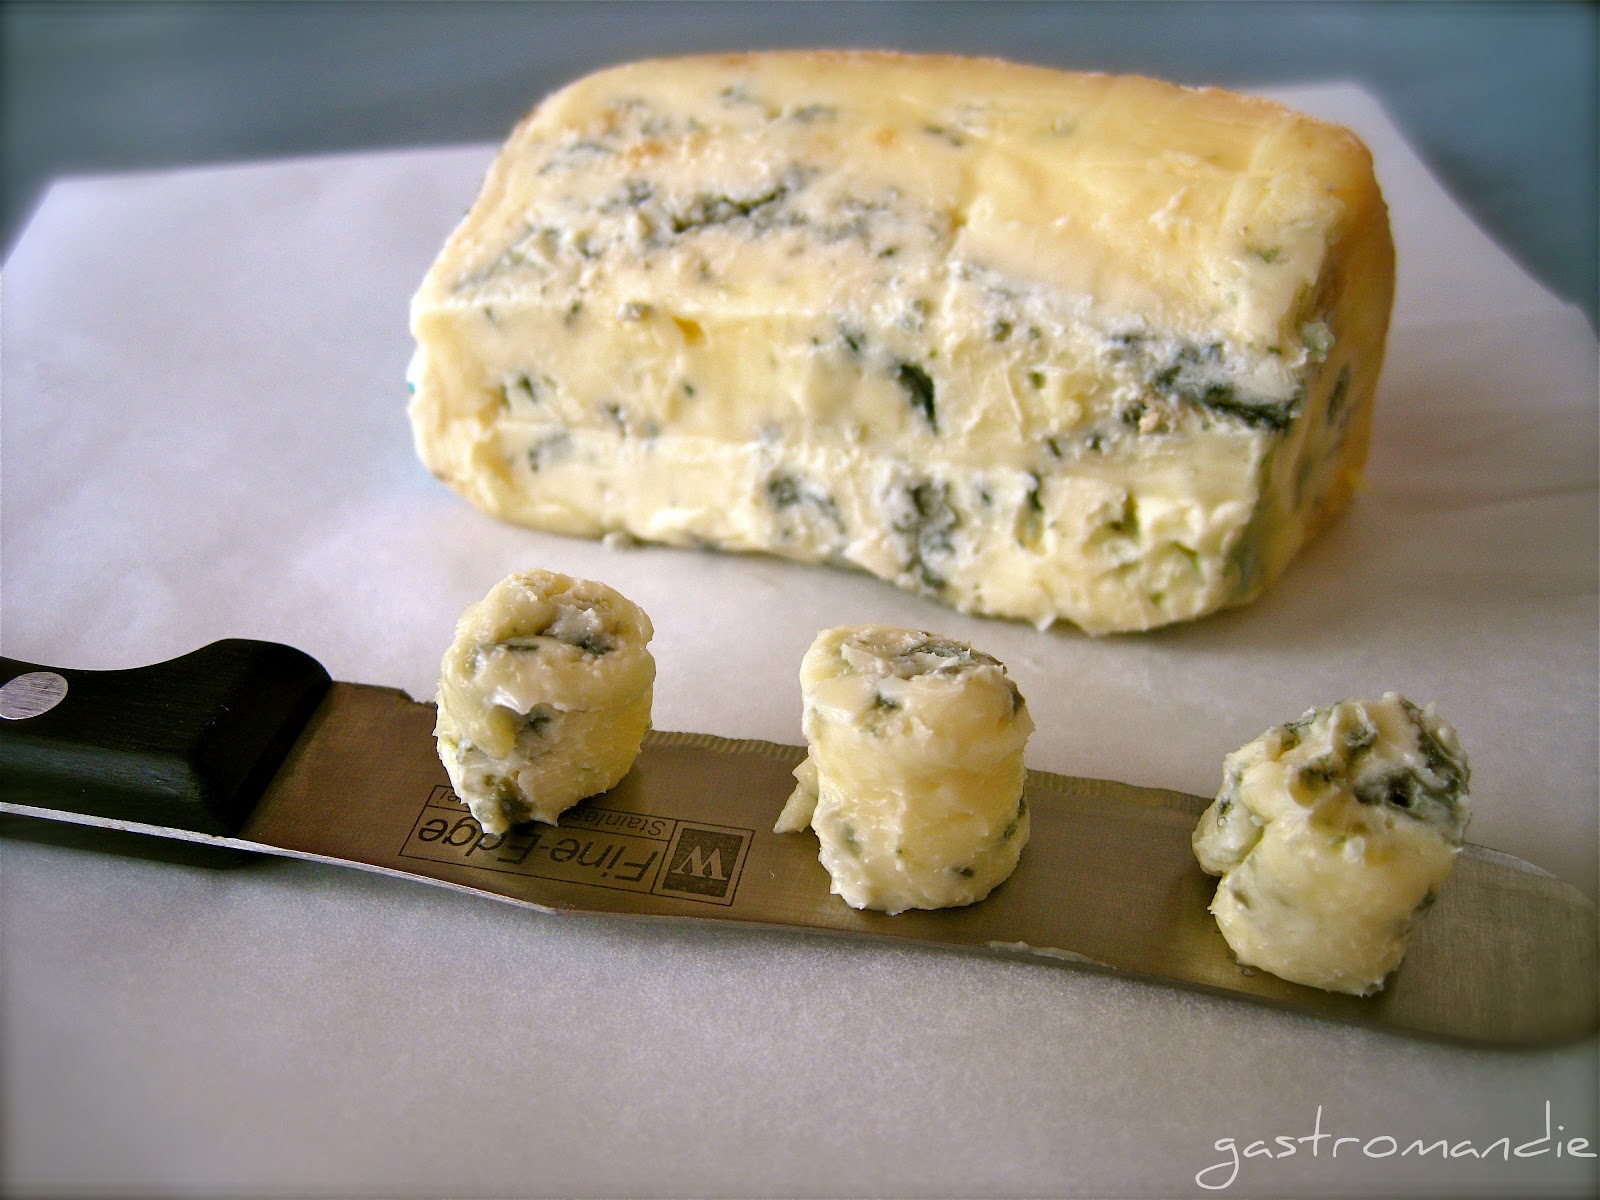 Πώς παράγεται το διάσημο ιταλικό τυρί γκοργκοντζόλα;